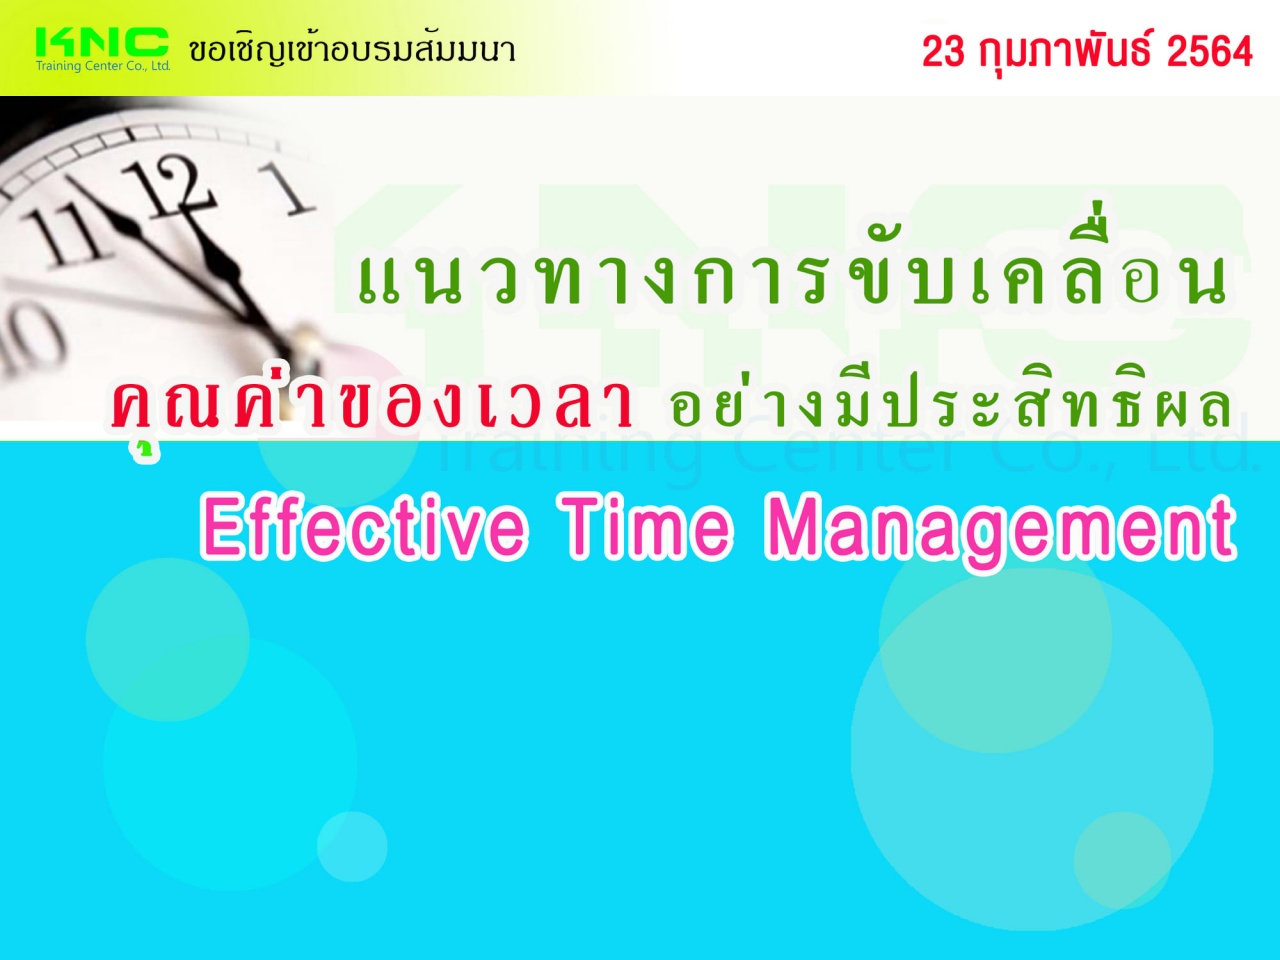 แนวทางการขับเคลื่อน “คุณค่าของเวลา” อย่างมีประสิทธิผล (Effective Time Management)